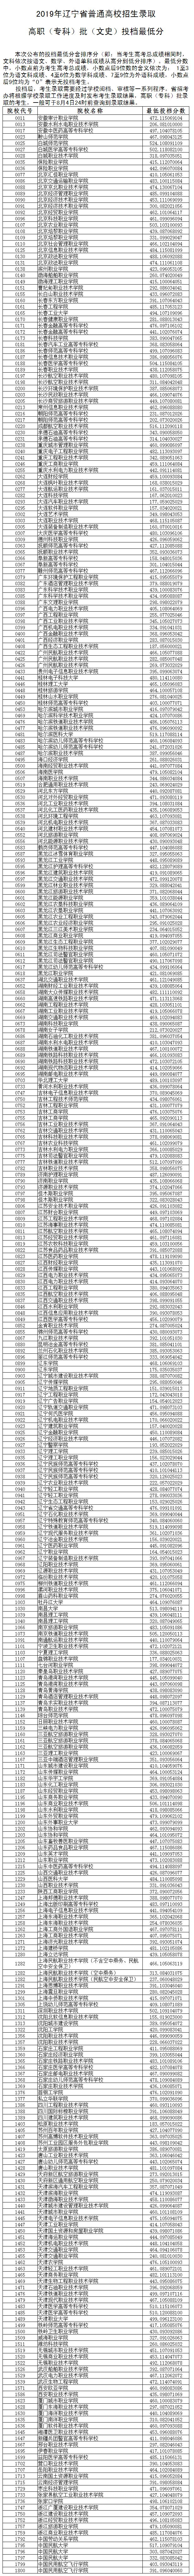 2019年辽宁高考专科院校投档线投档情况分析【文科】